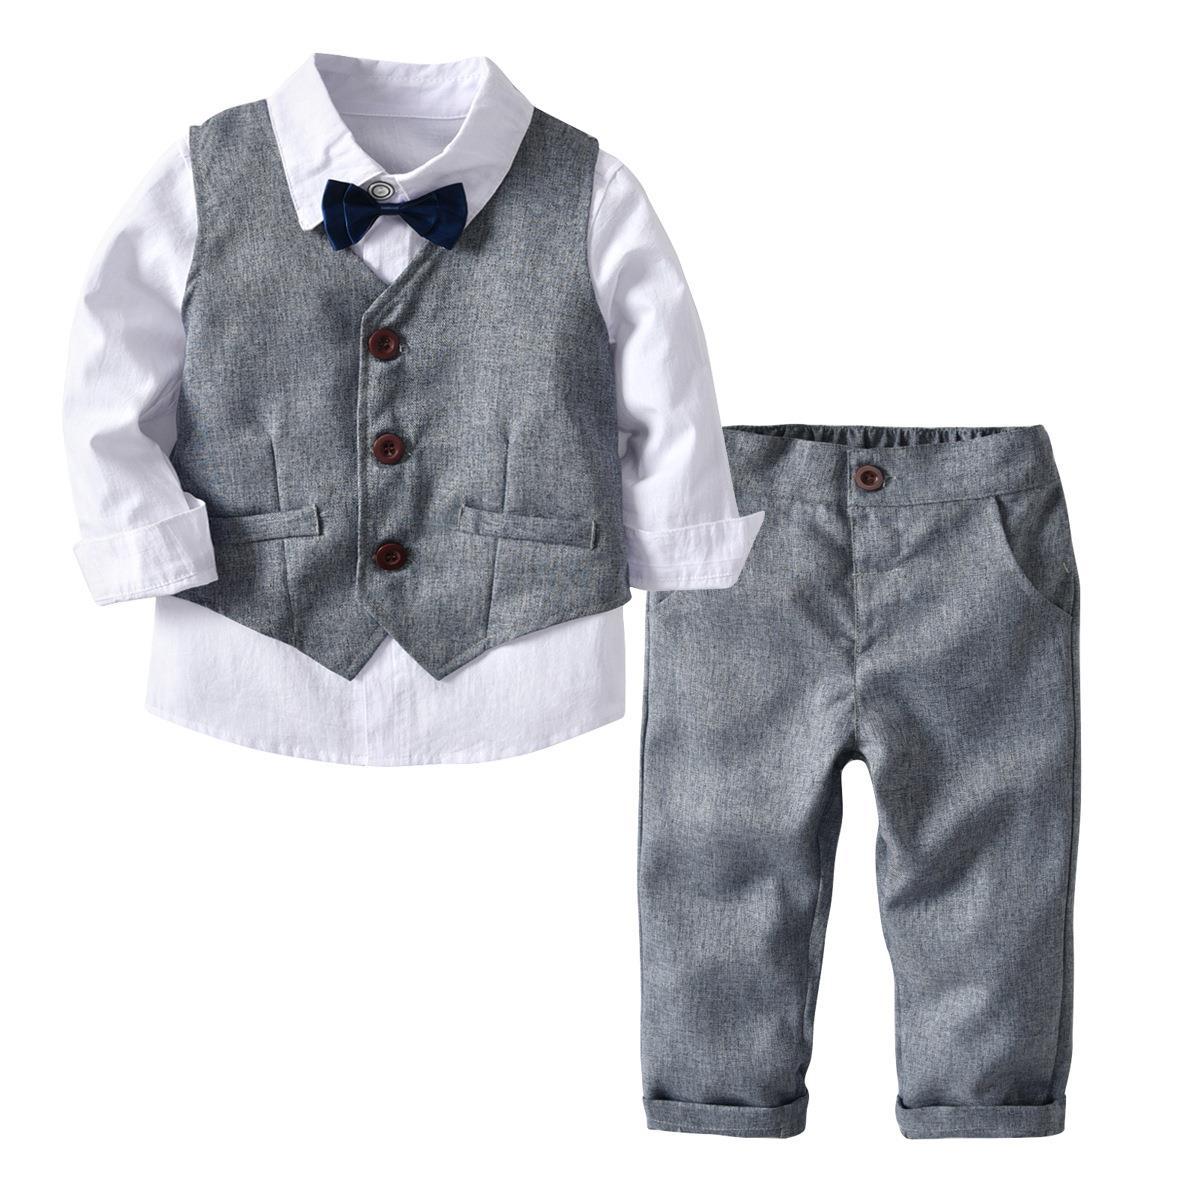 Boys Gentleman Long Sleeve w/Bow Tie Suit Vest